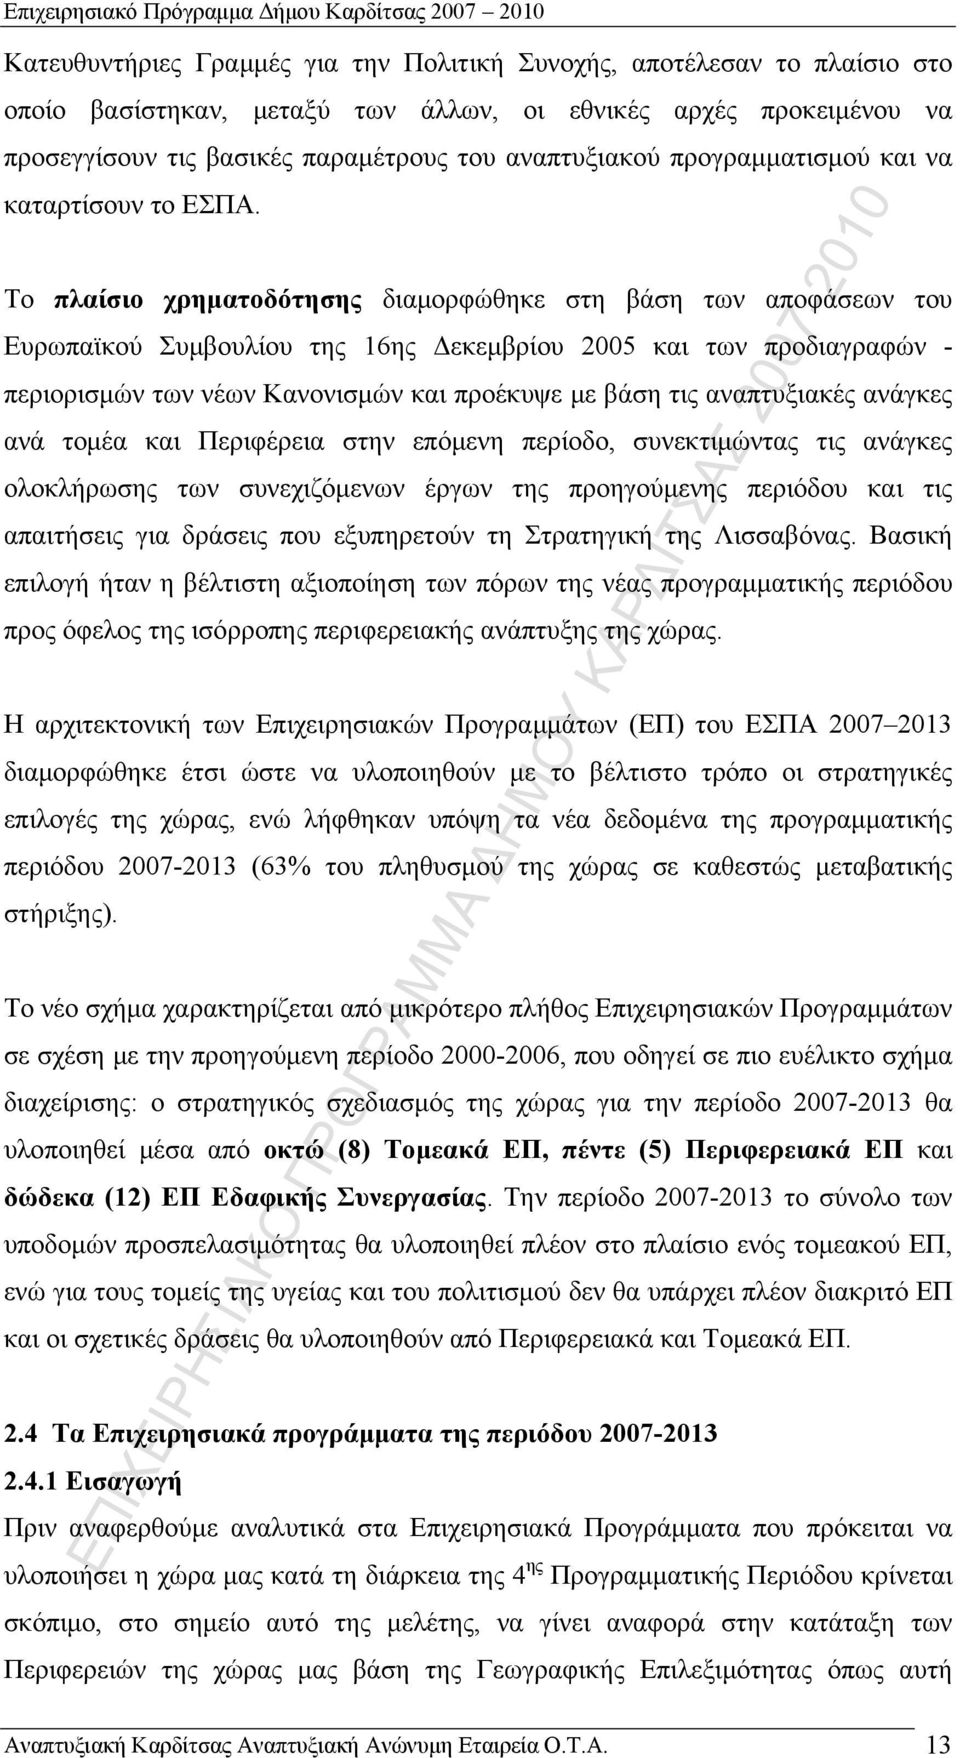 Το πλαίσιο χρηματοδότησης διαμορφώθηκε στη βάση των αποφάσεων του Ευρωπαϊκού Συμβουλίου της 16ης Δεκεμβρίου 2005 και των προδιαγραφών - περιορισμών των νέων Κανονισμών και προέκυψε με βάση τις